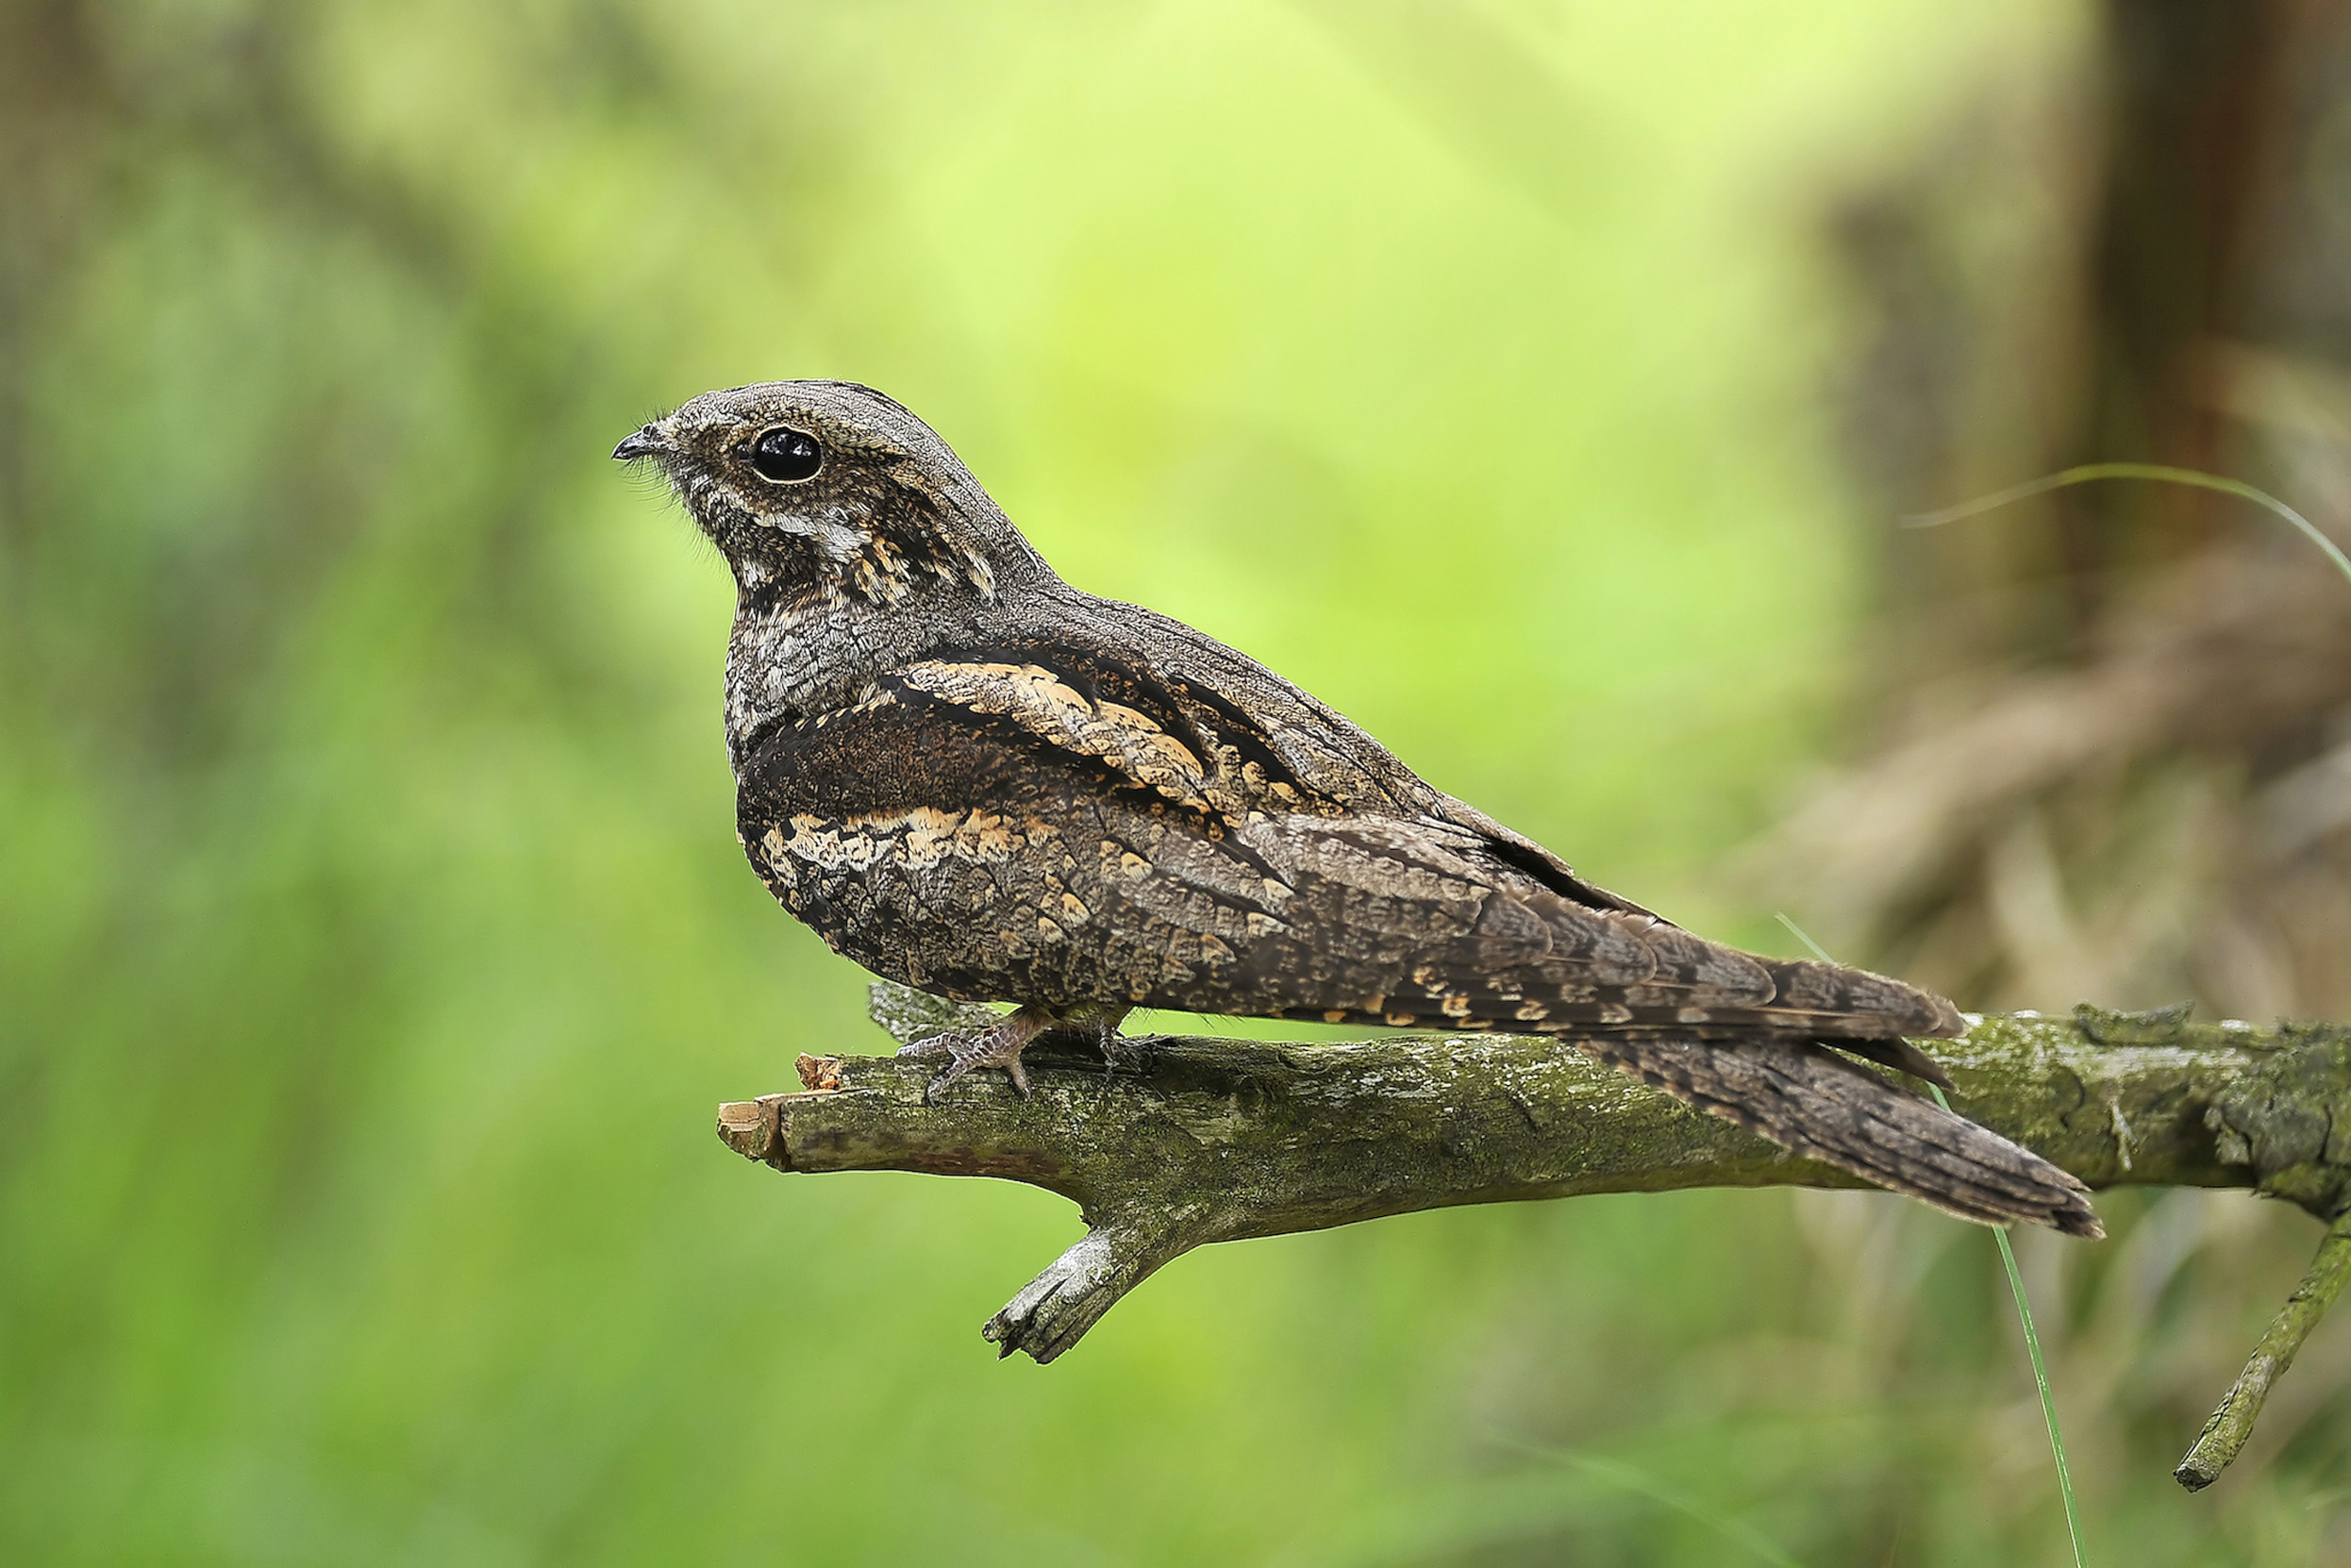 A lone Nightjar perched on a branch.